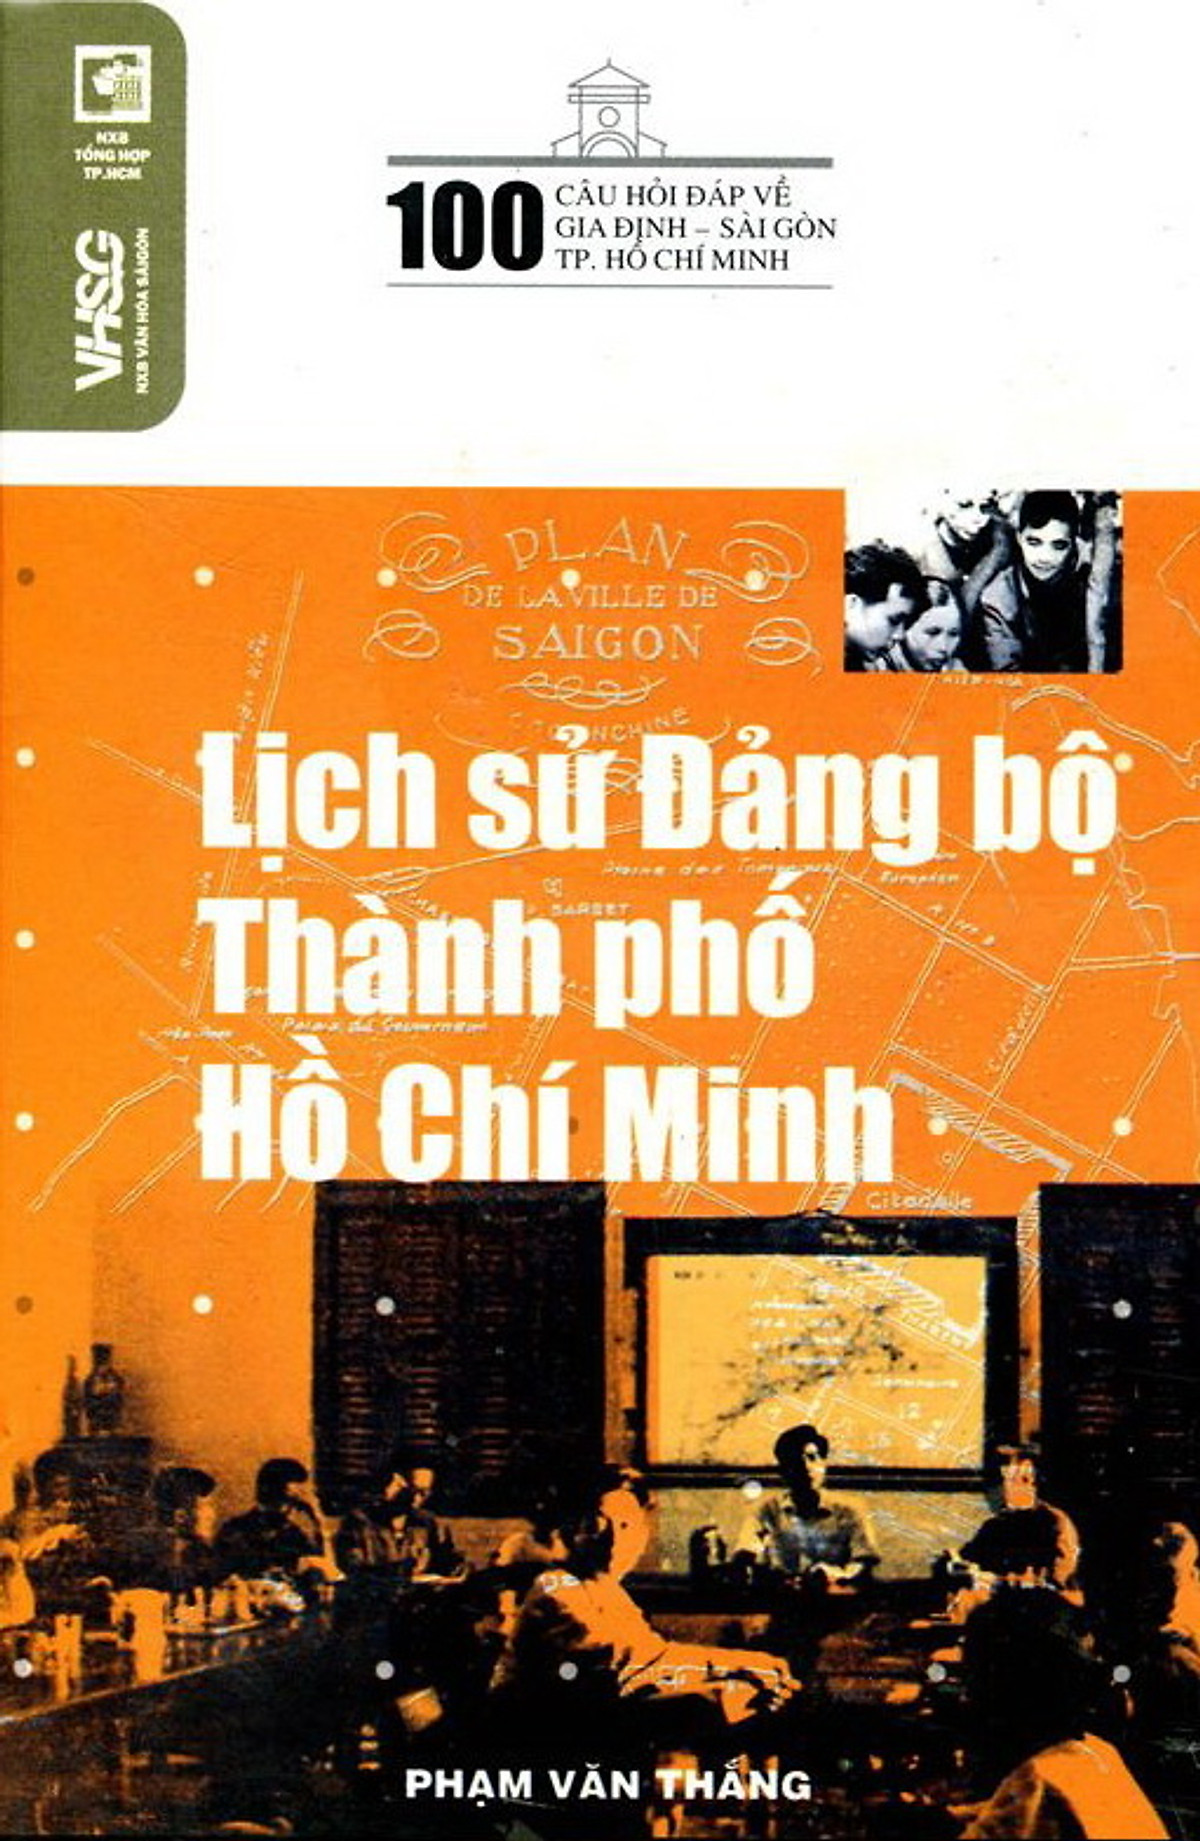 pic-100 Câu Hỏi Về Gia Định Sài Gòn - Lịch Sử Đảng Bộ Thành Phố Hồ Chí Minh